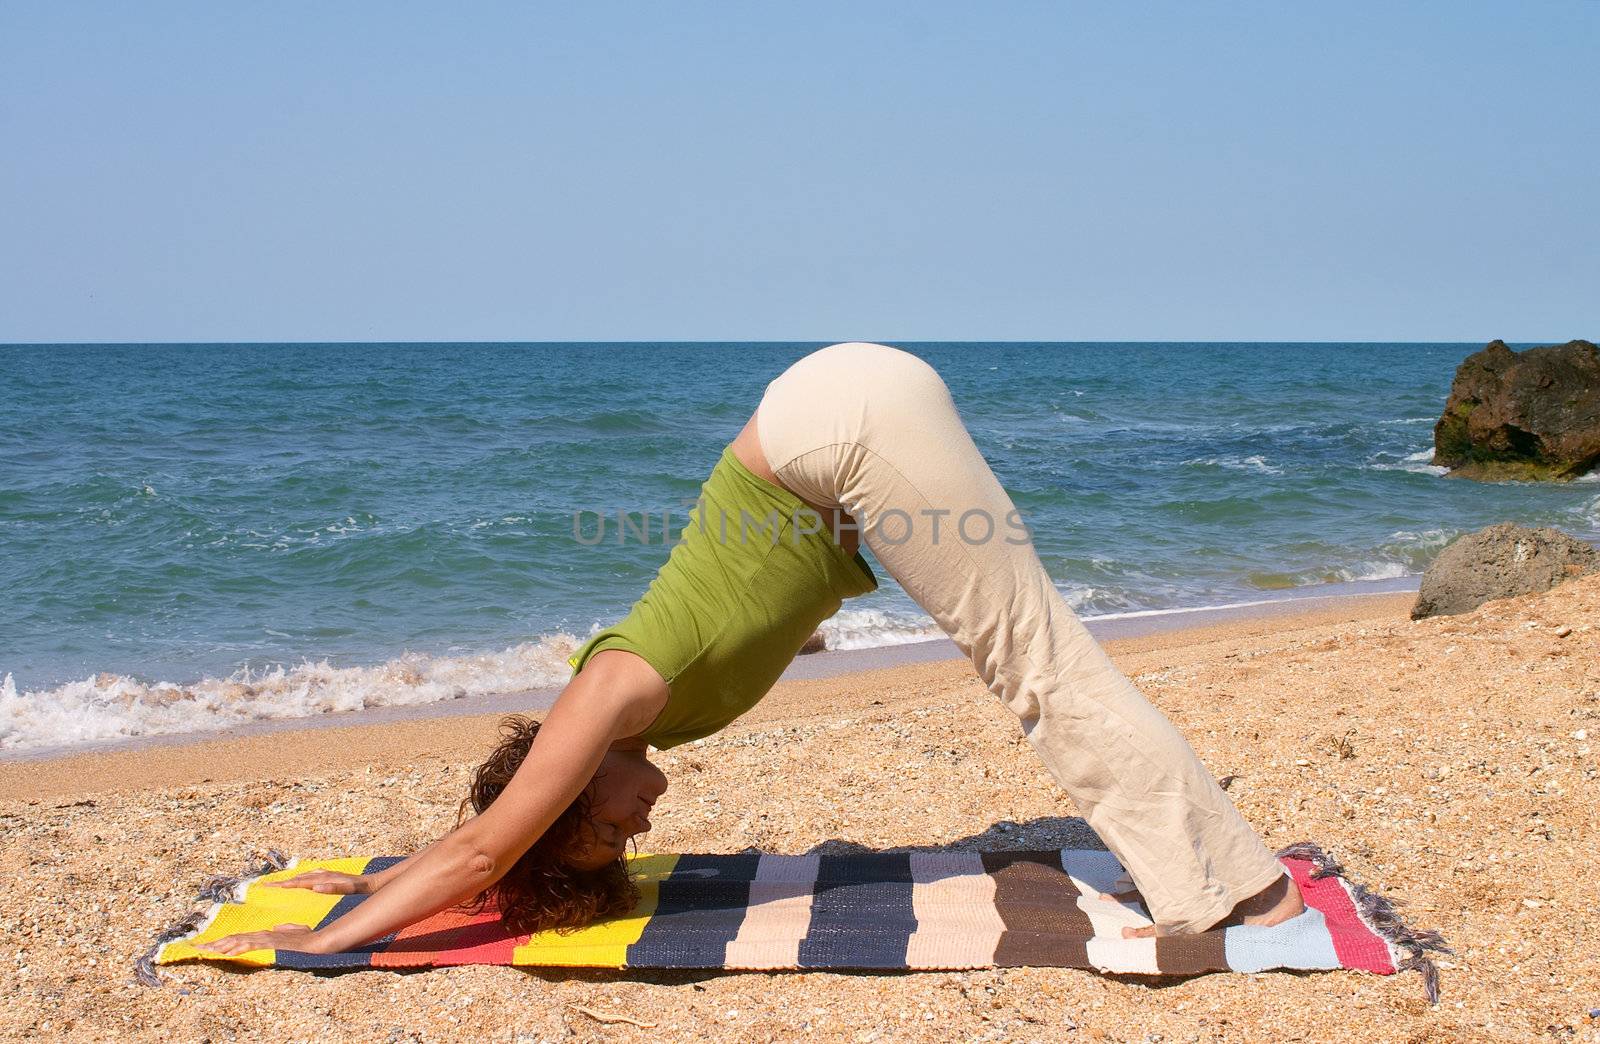 girl in Adho Mukha Svanasana yoga pose by Ukrainian